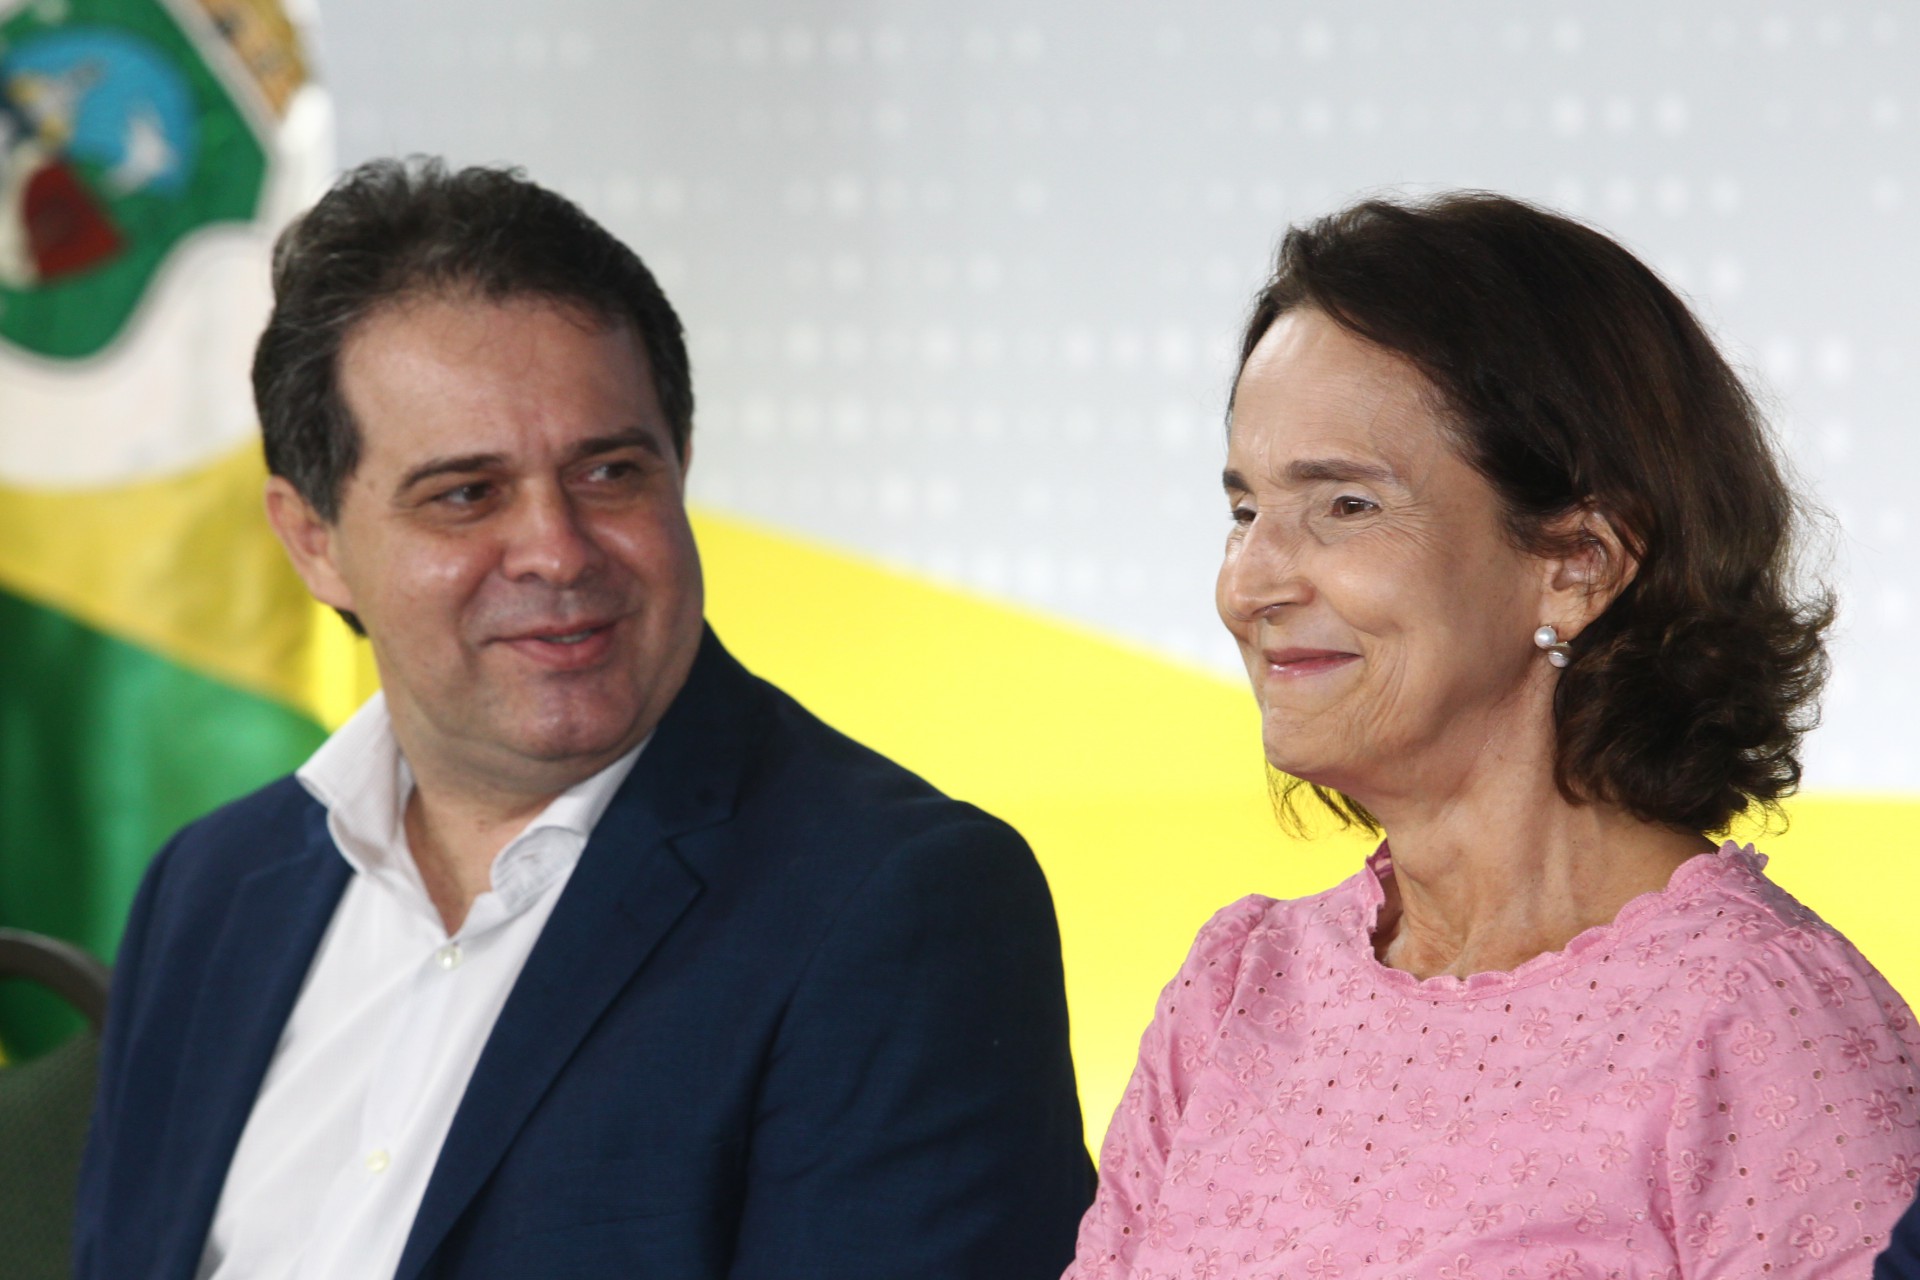 Evandro Leitão, presidente da Assembleia Legislativa do Estado, e Izolda Cela, governadora do Estado (Foto: FABIO LIMA)